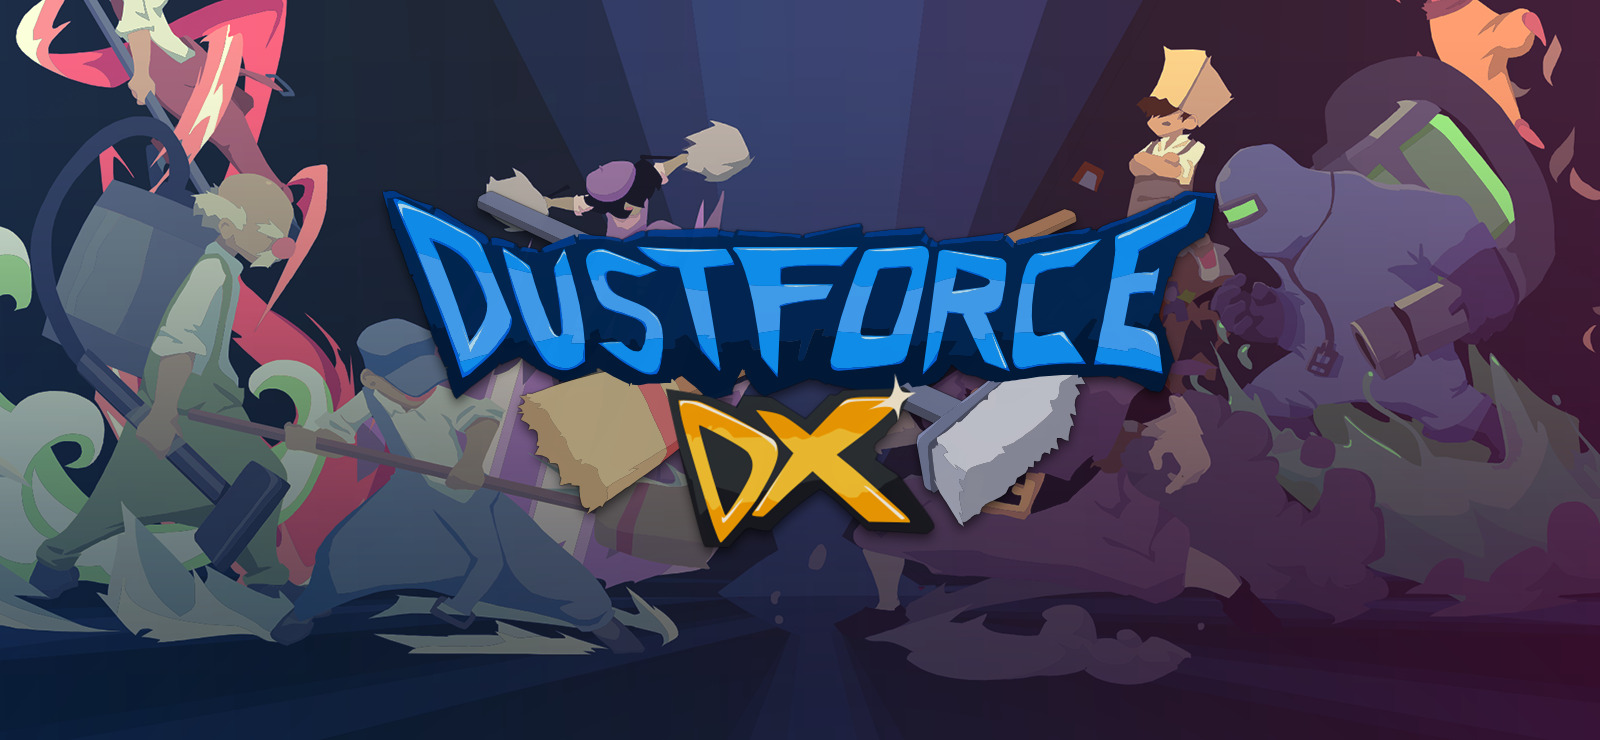 dustforce dx speed run